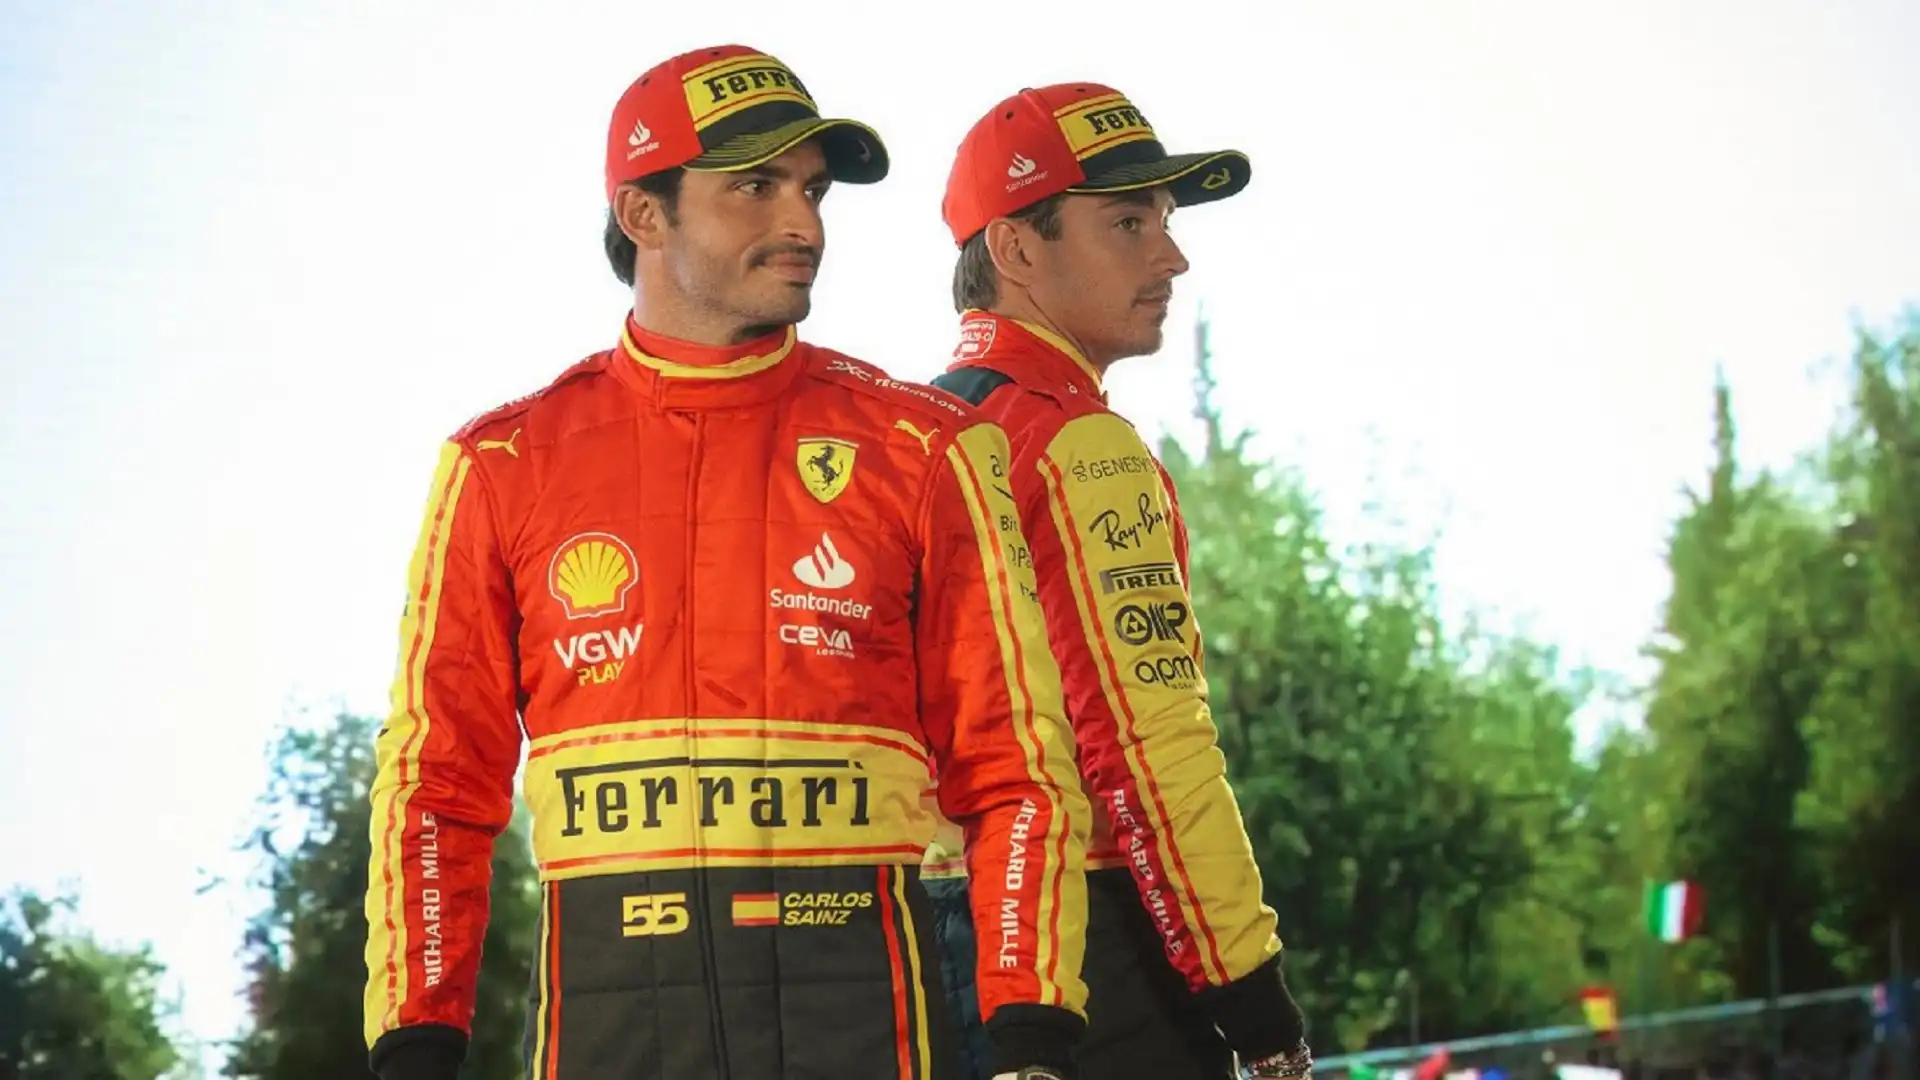 La Ferrari cambia colore in occasione del Gran Premio di Monza